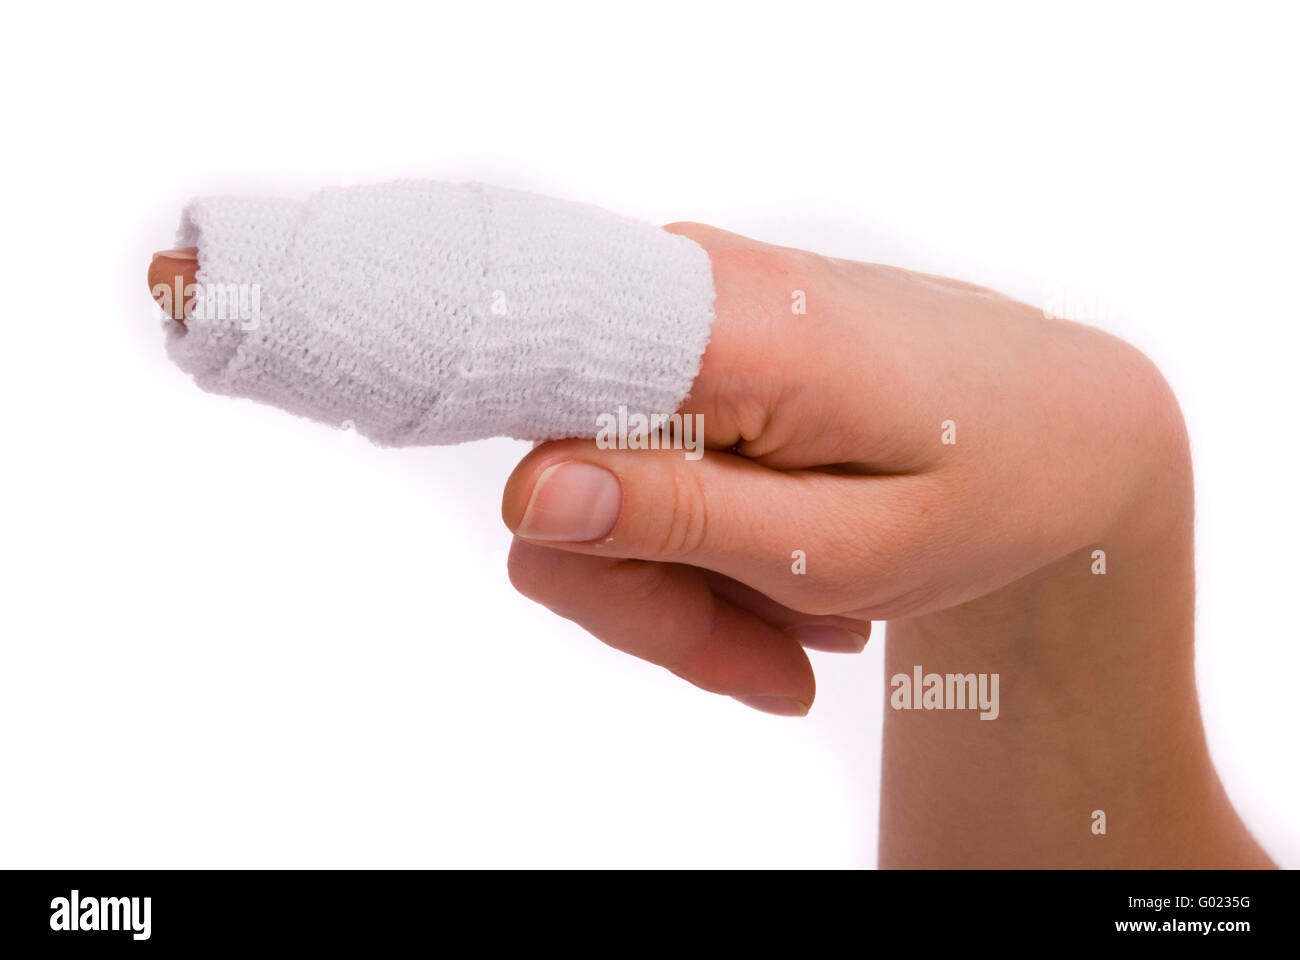 White medicine bandage on human injury hand finger Stock Photo